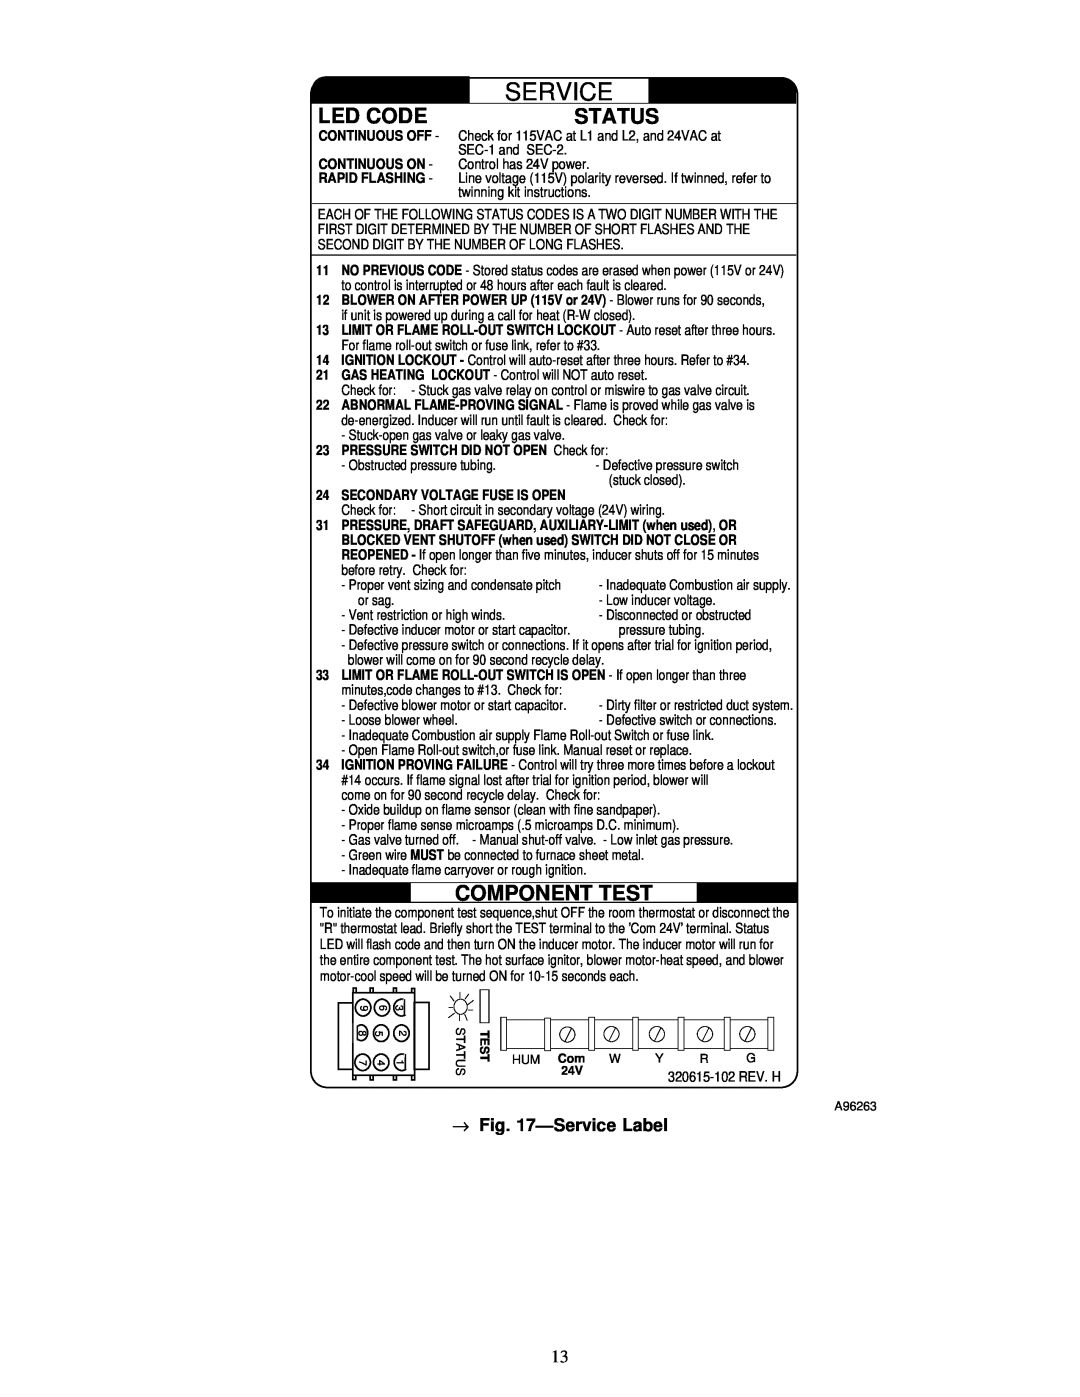 Carrier 58MCA instruction manual Led Code, Status, Component Test, ÐService Label 